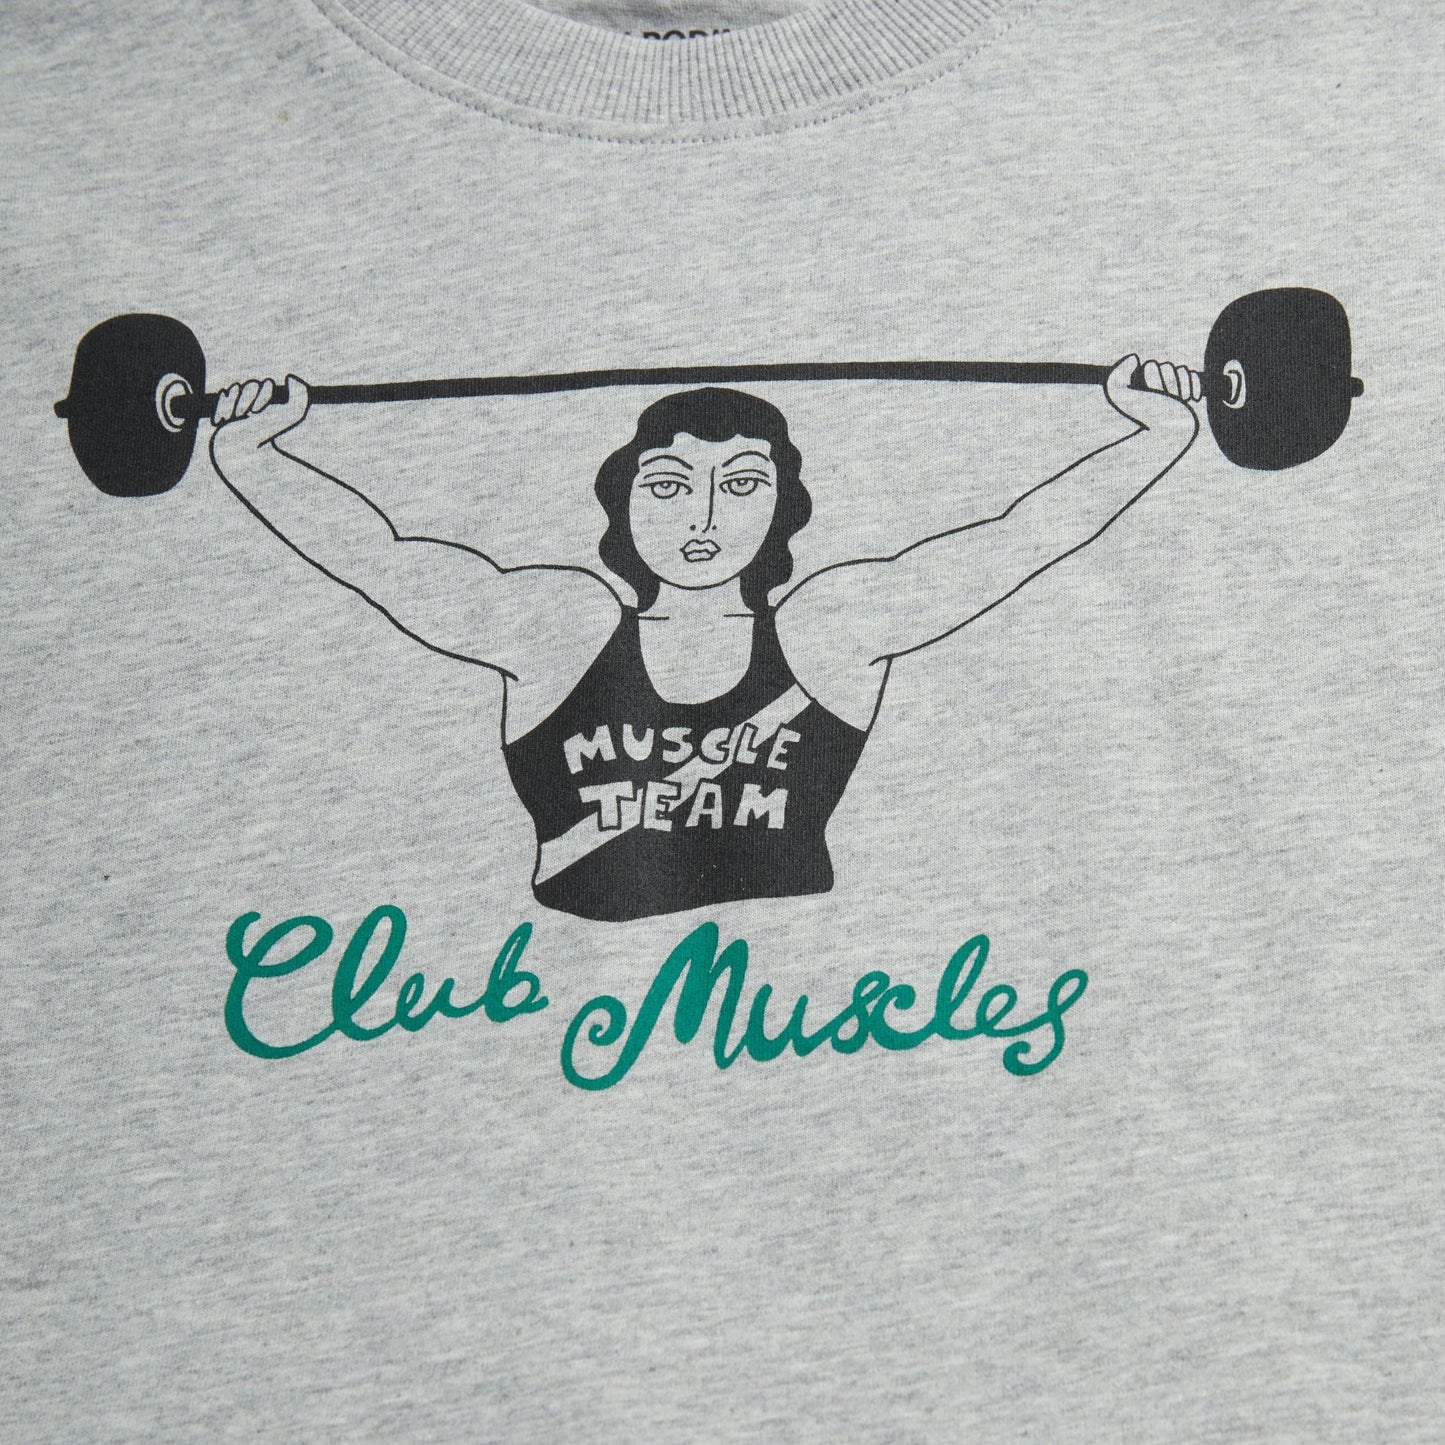 MINI RODINI Club Muscles T-Shirt ALWAYS SHOW